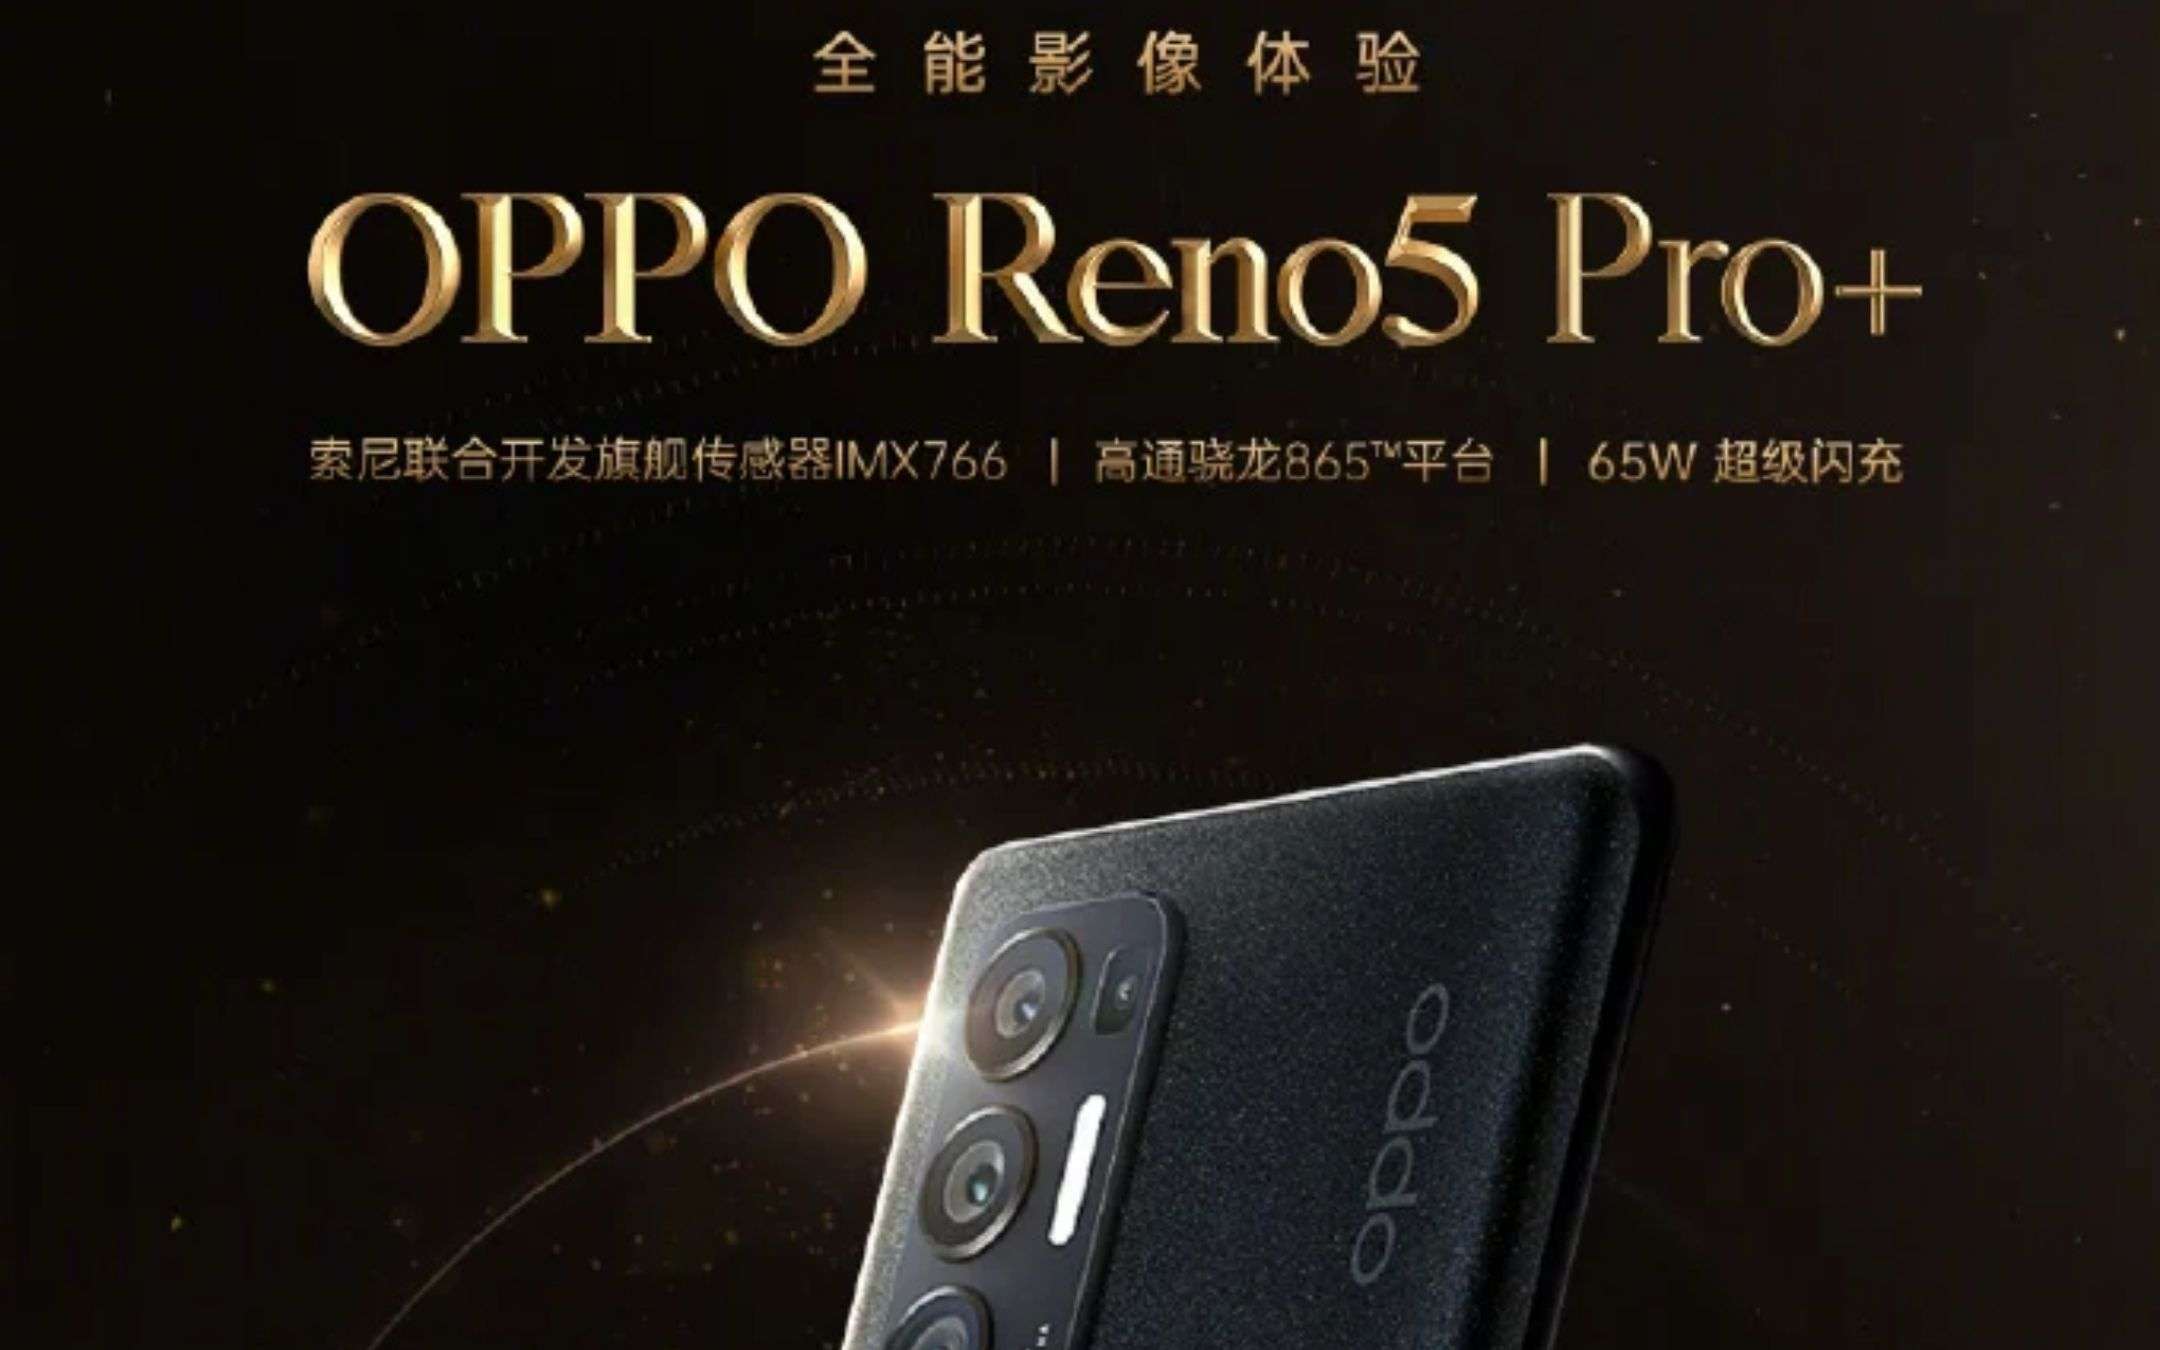 OPPO Reno5 Pro+: confermata una fotocamera top